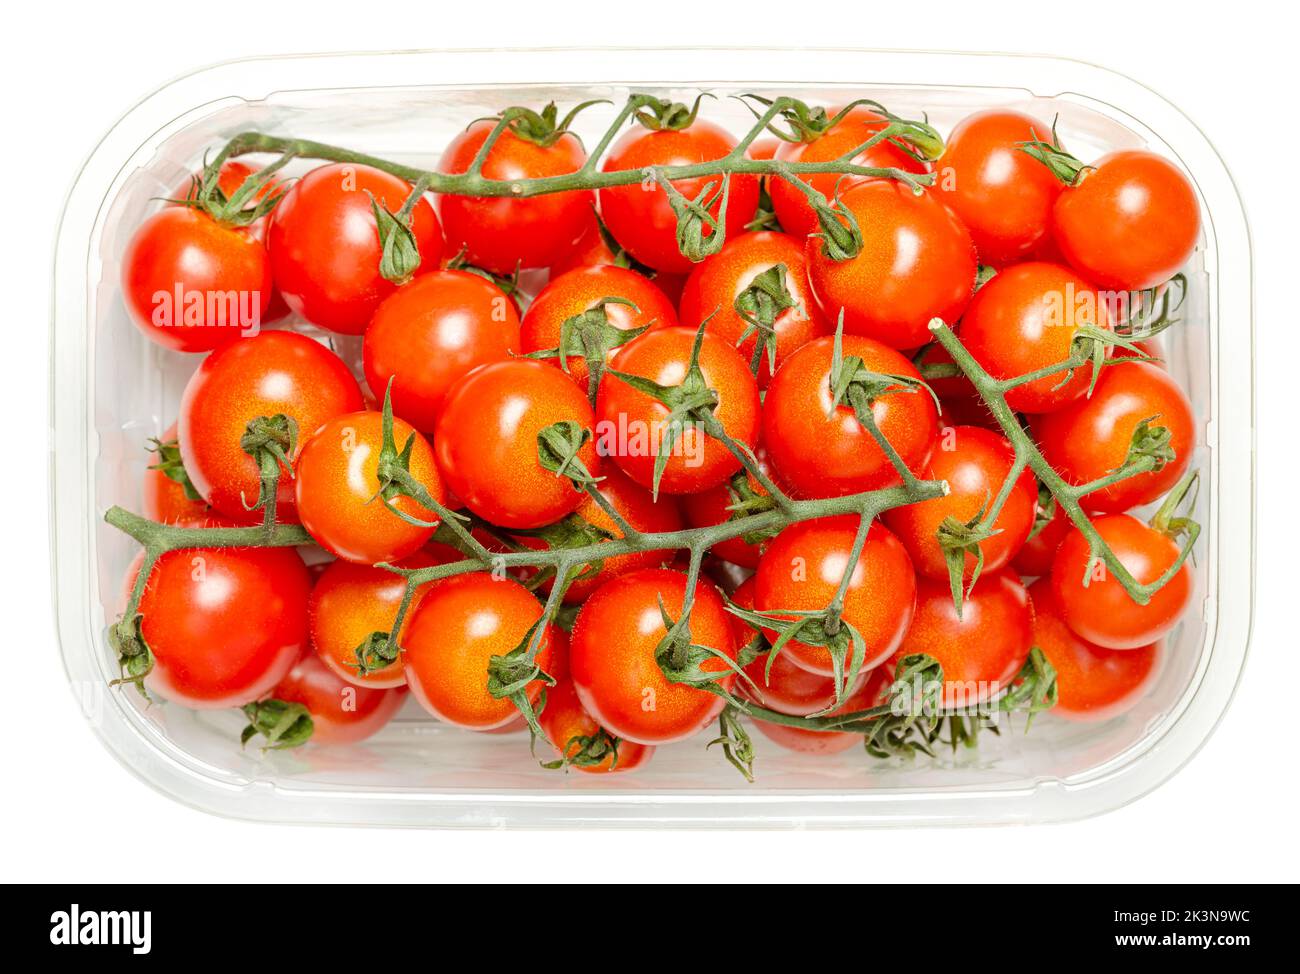 Pomodori ciliegini sulla vite in contenitore di plastica trasparente, dall'alto, isolato su bianco. Tipo fresco e maturo di pomodori da cocktail rossi piccoli e tondi. Foto Stock